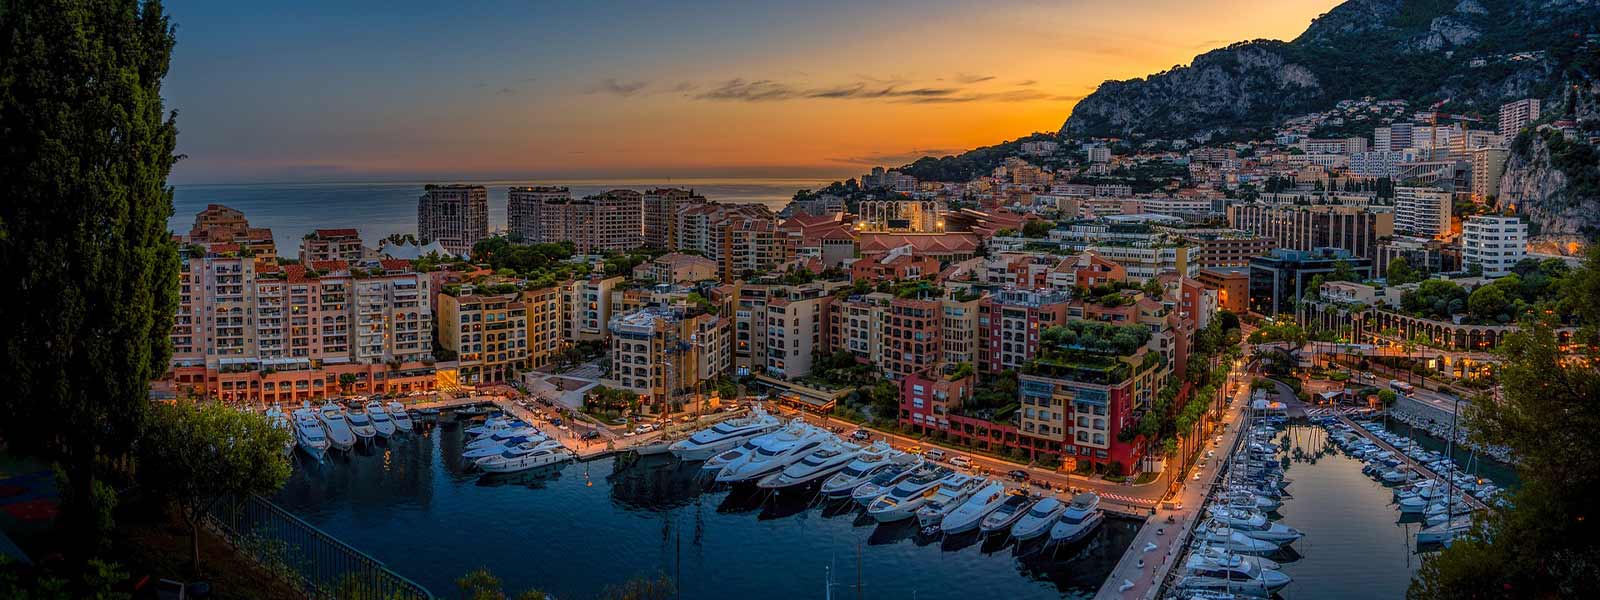 Blik op de haven van Monaco